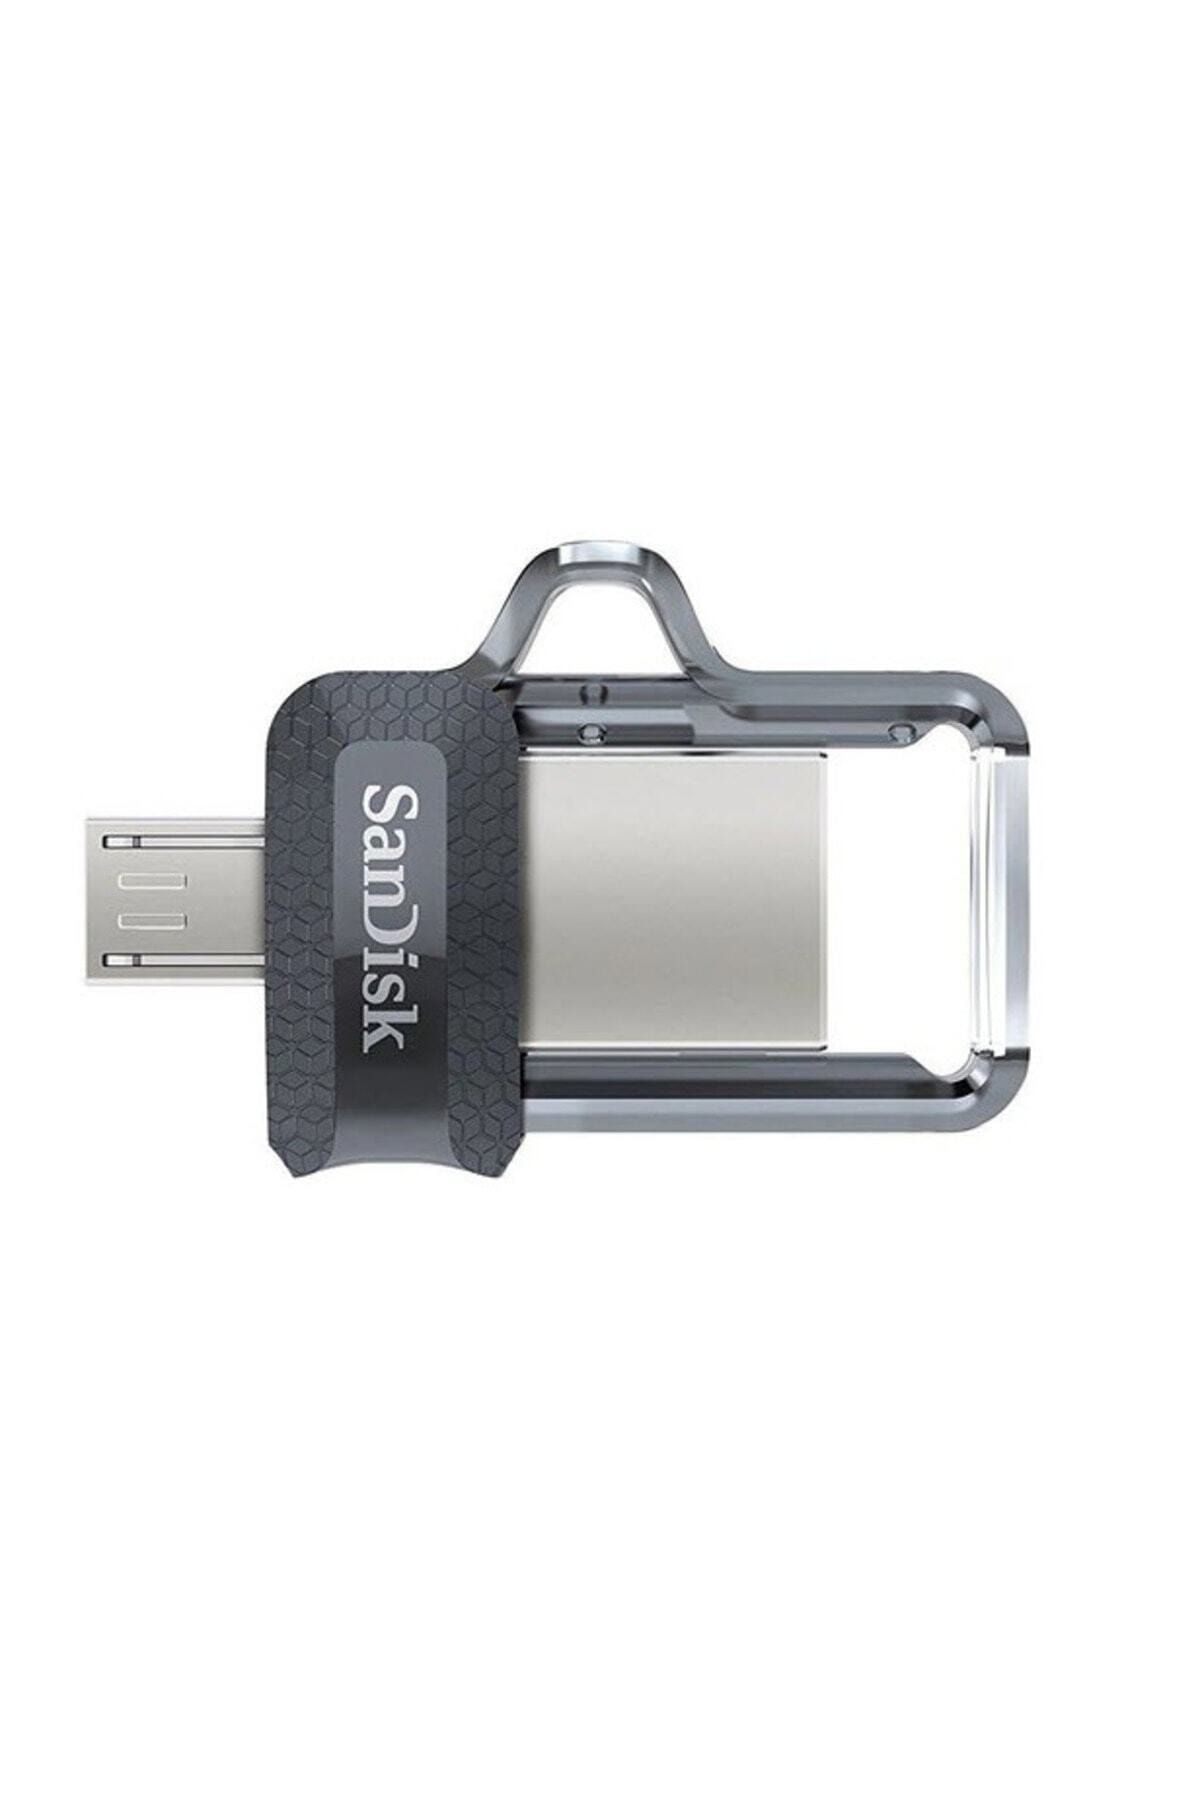 Sandisk Ultra Dual Drive USB 3.0 Bellek 32 GB SDDD3-032G-G46